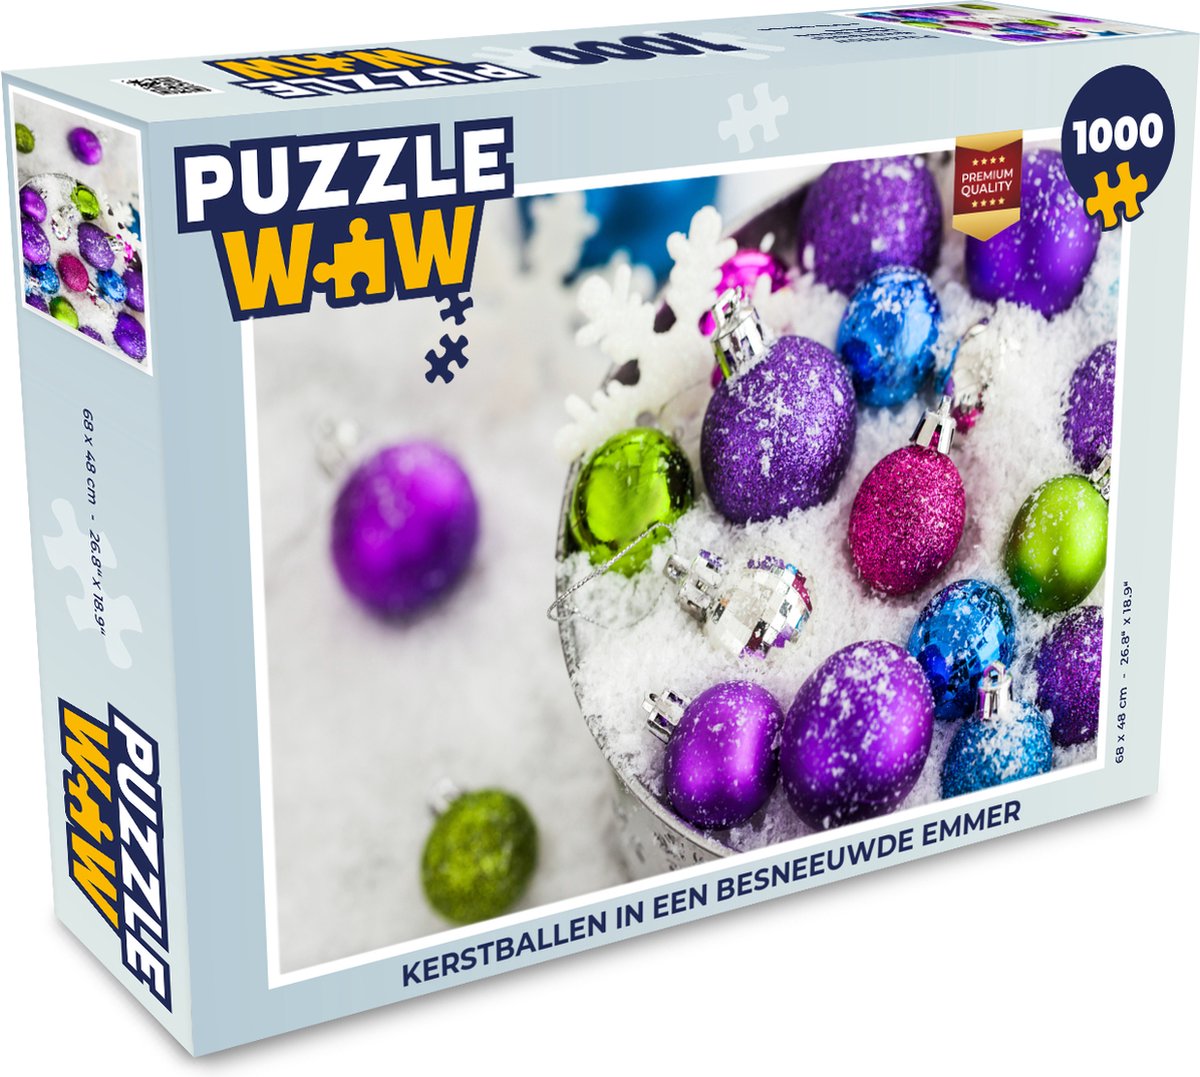 Puzzel Kerstballen in een besneeuwde emmer - Legpuzzel - Puzzel 1000 stukjes volwassenen - Kerst - Cadeau - Kerstcadeau voor mannen, vrouwen en kinderen - PuzzleWow